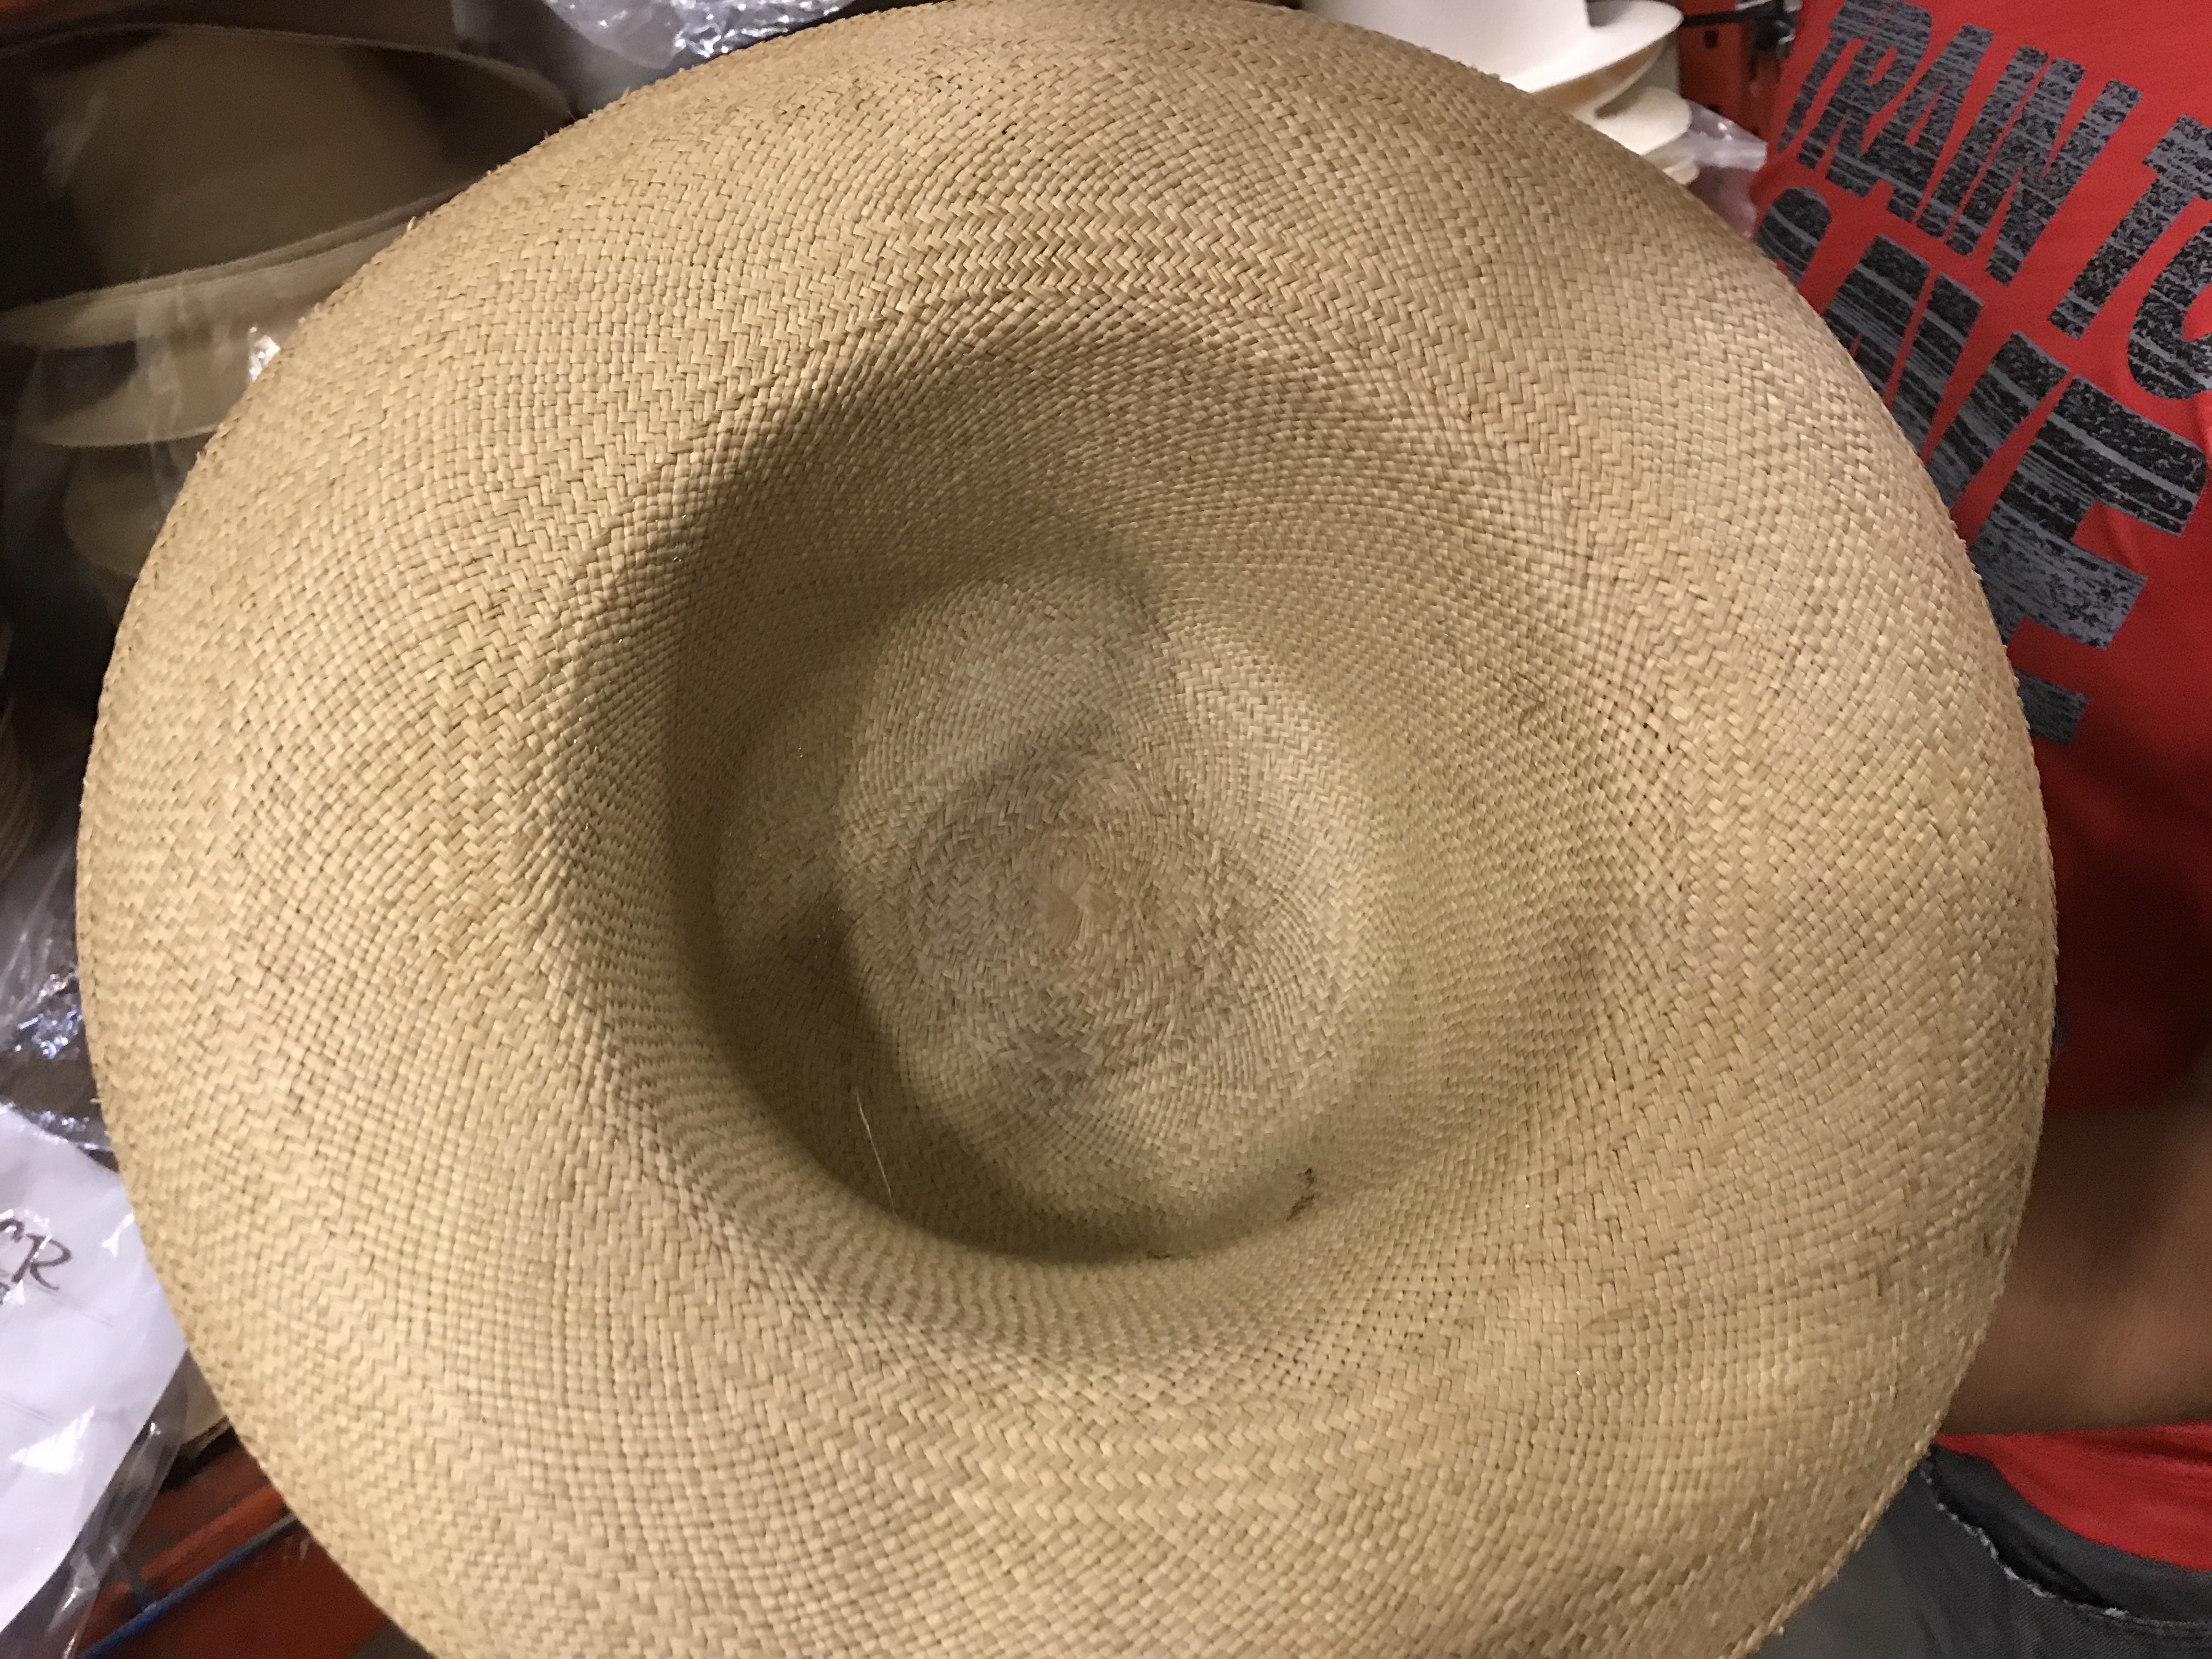 Blog - Making a Panama Hat | The Guayabera Shirt Store